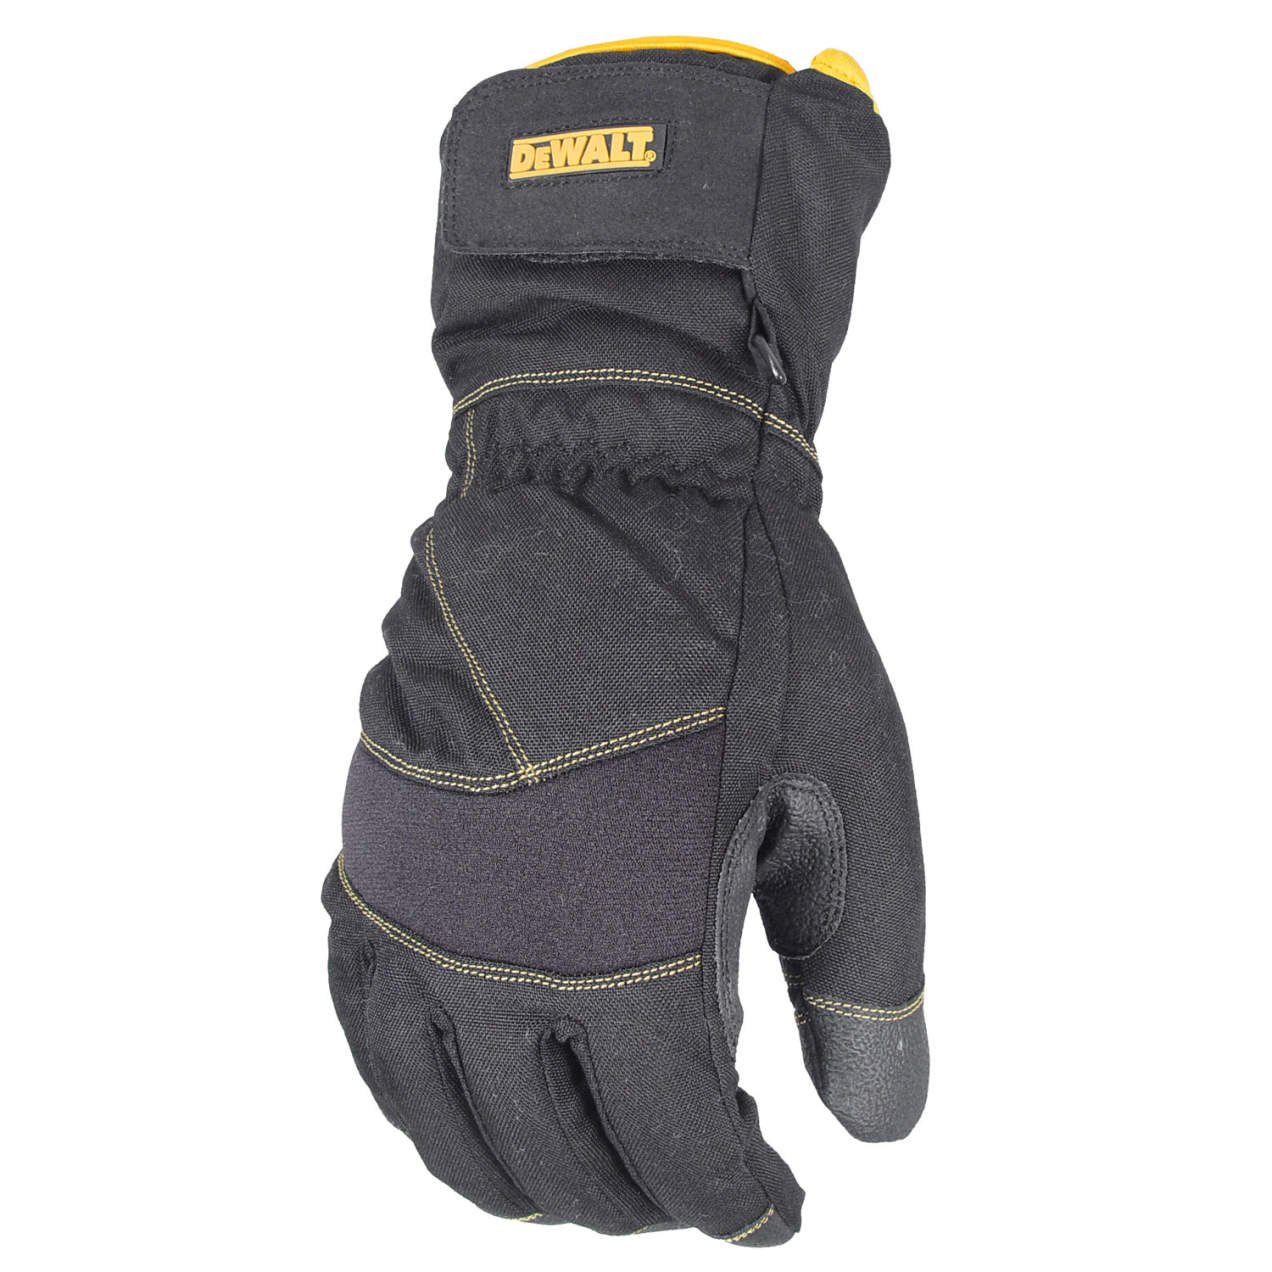 DeWalt DPG750 100g Insulated Extreme Condition Cold Weather Work Glove